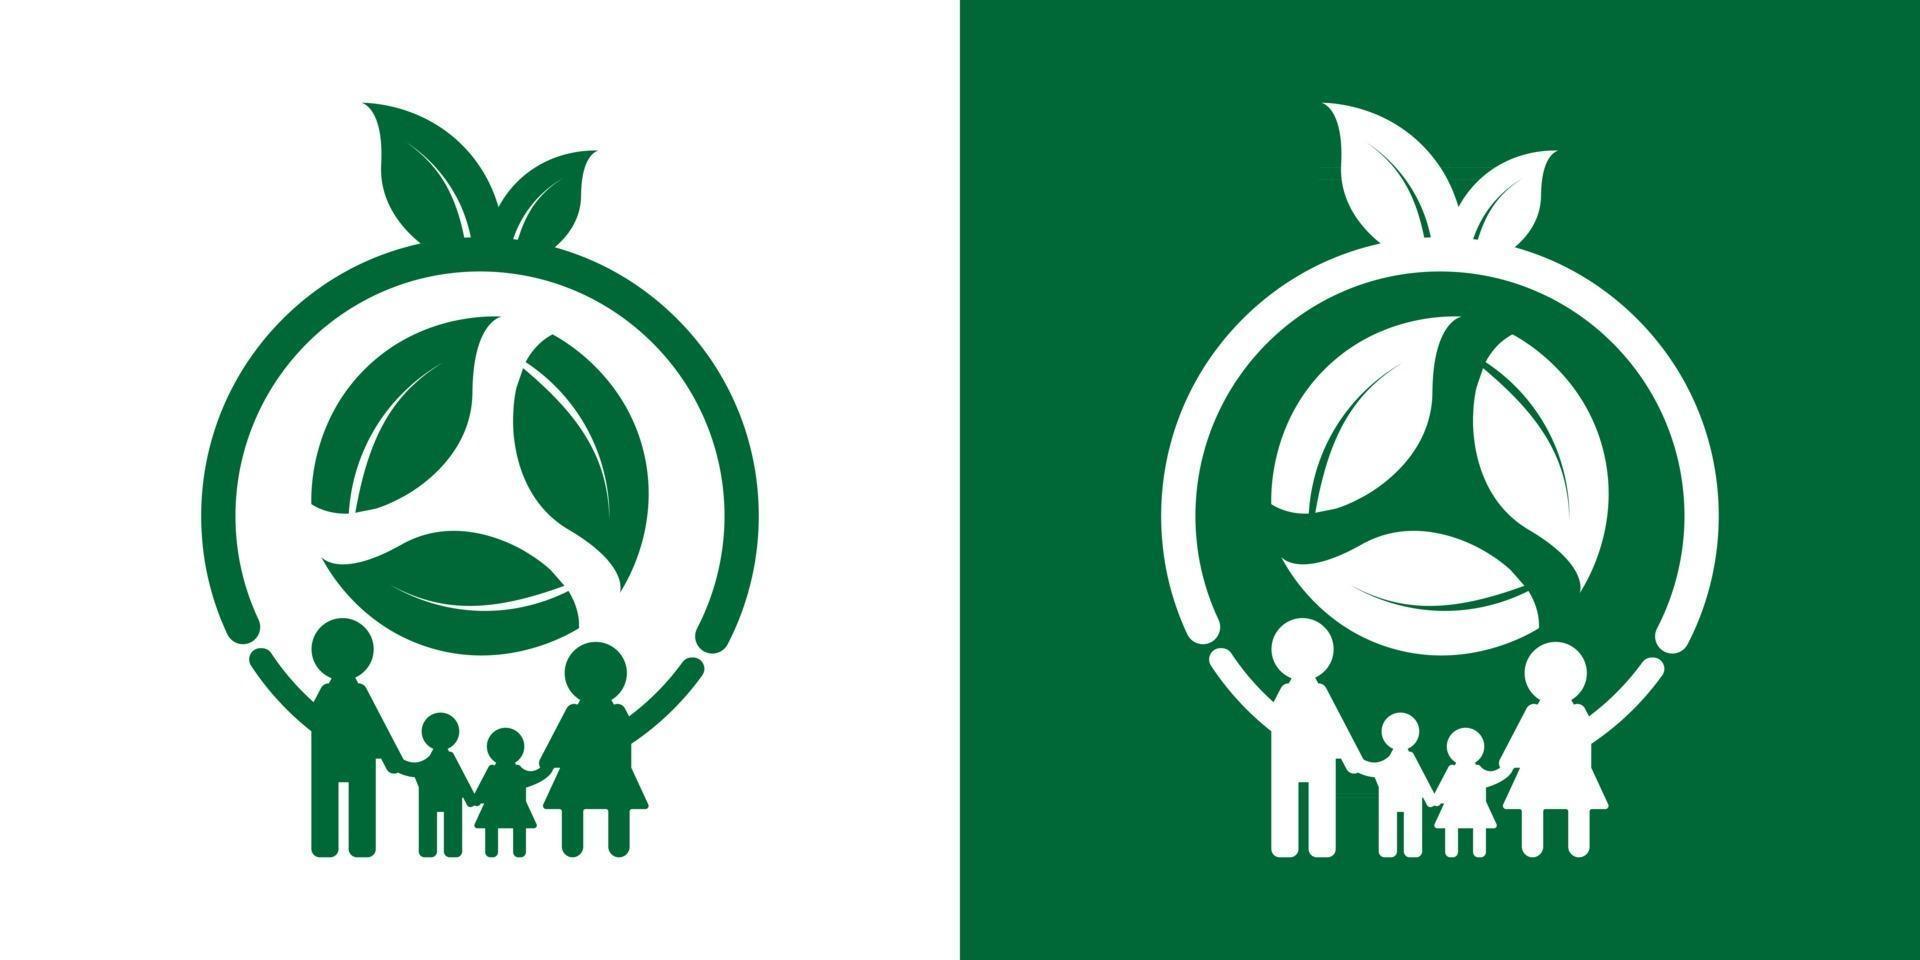 Family ecology logo concept design vector